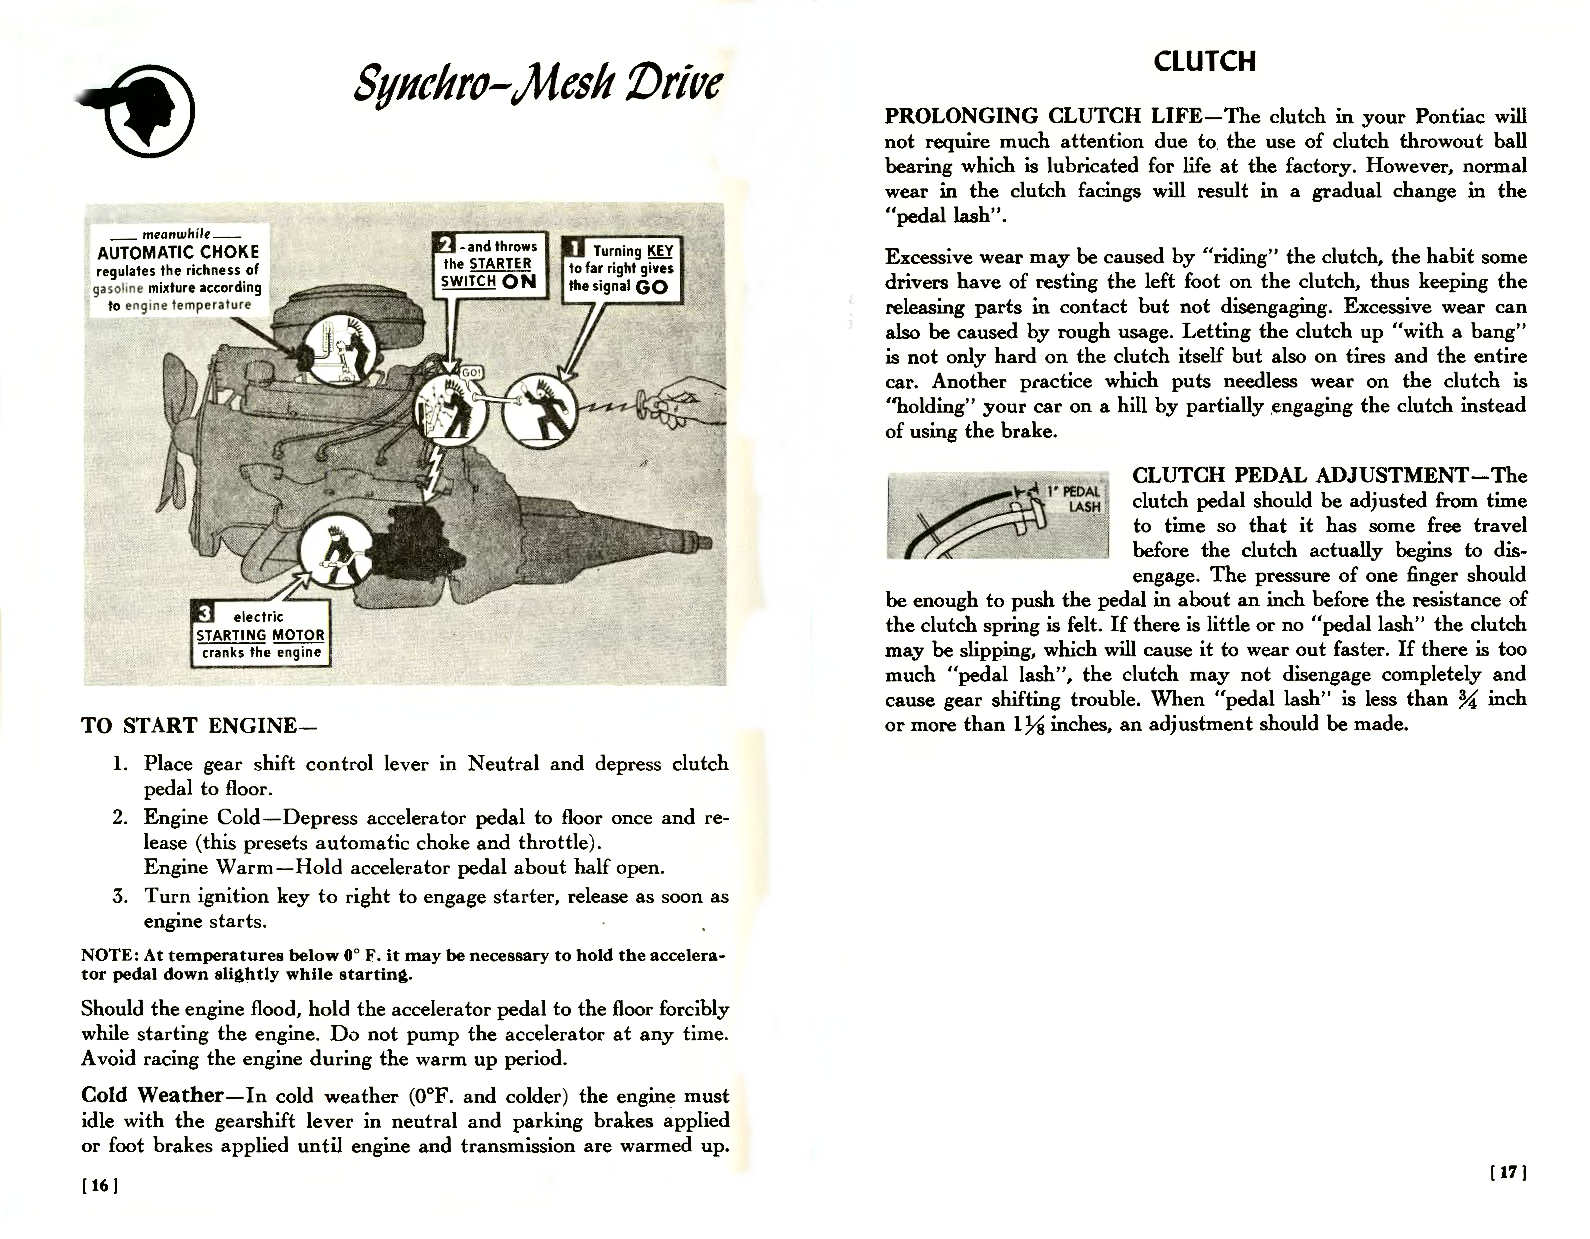 n_1957 Pontiac Owners Guide-16-17.jpg